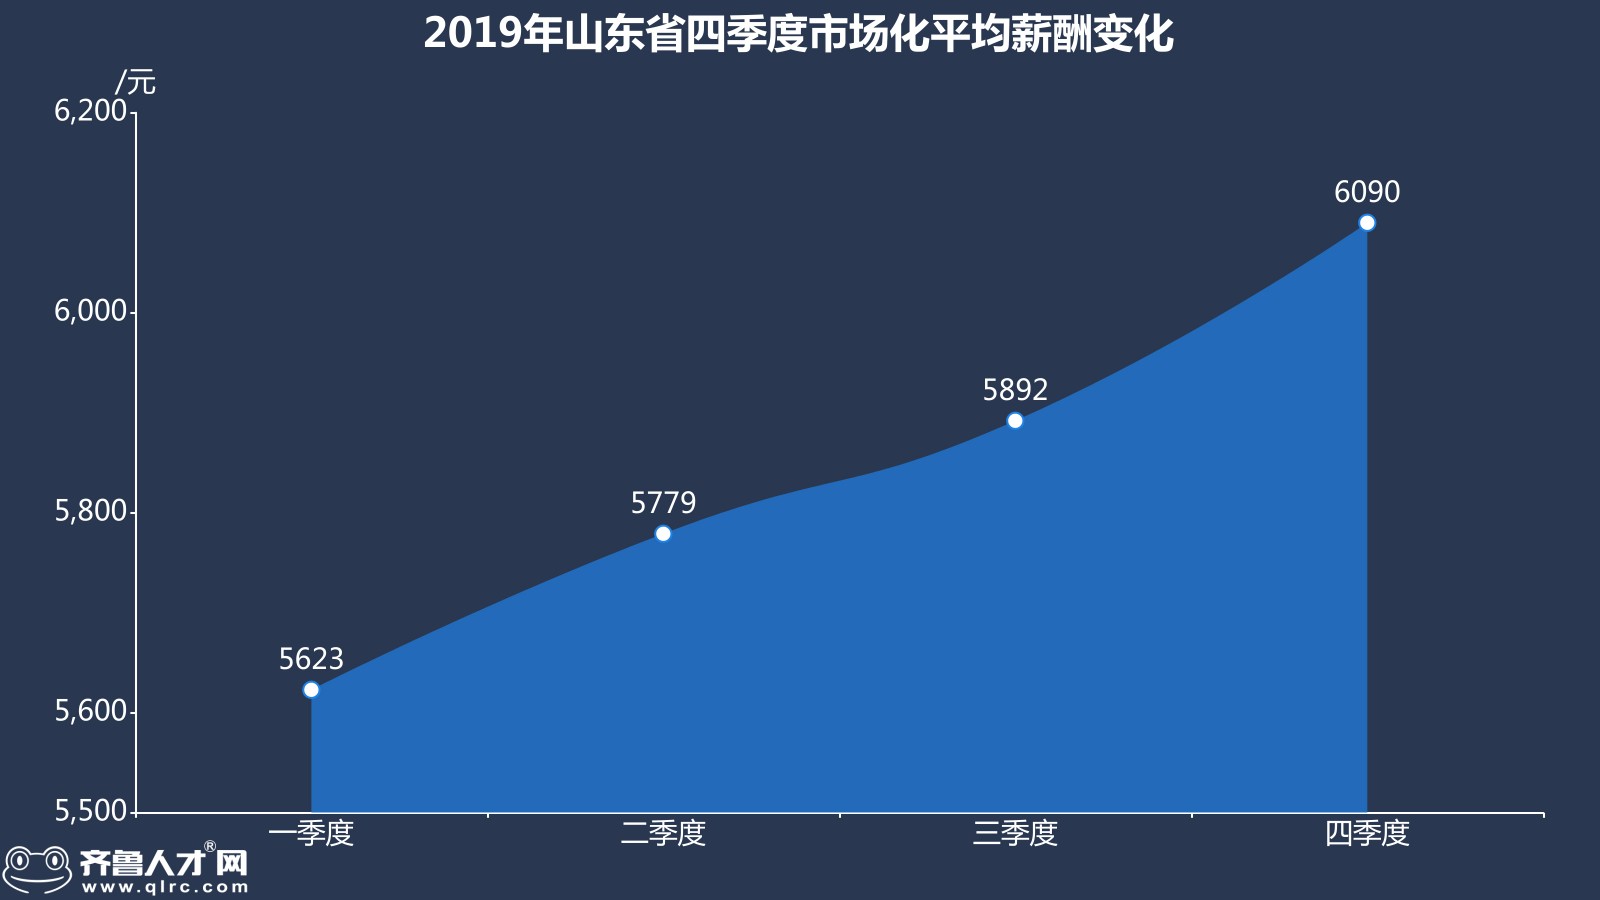 齊魯人才網-2019年山東四季度薪酬數據圖3.jpg